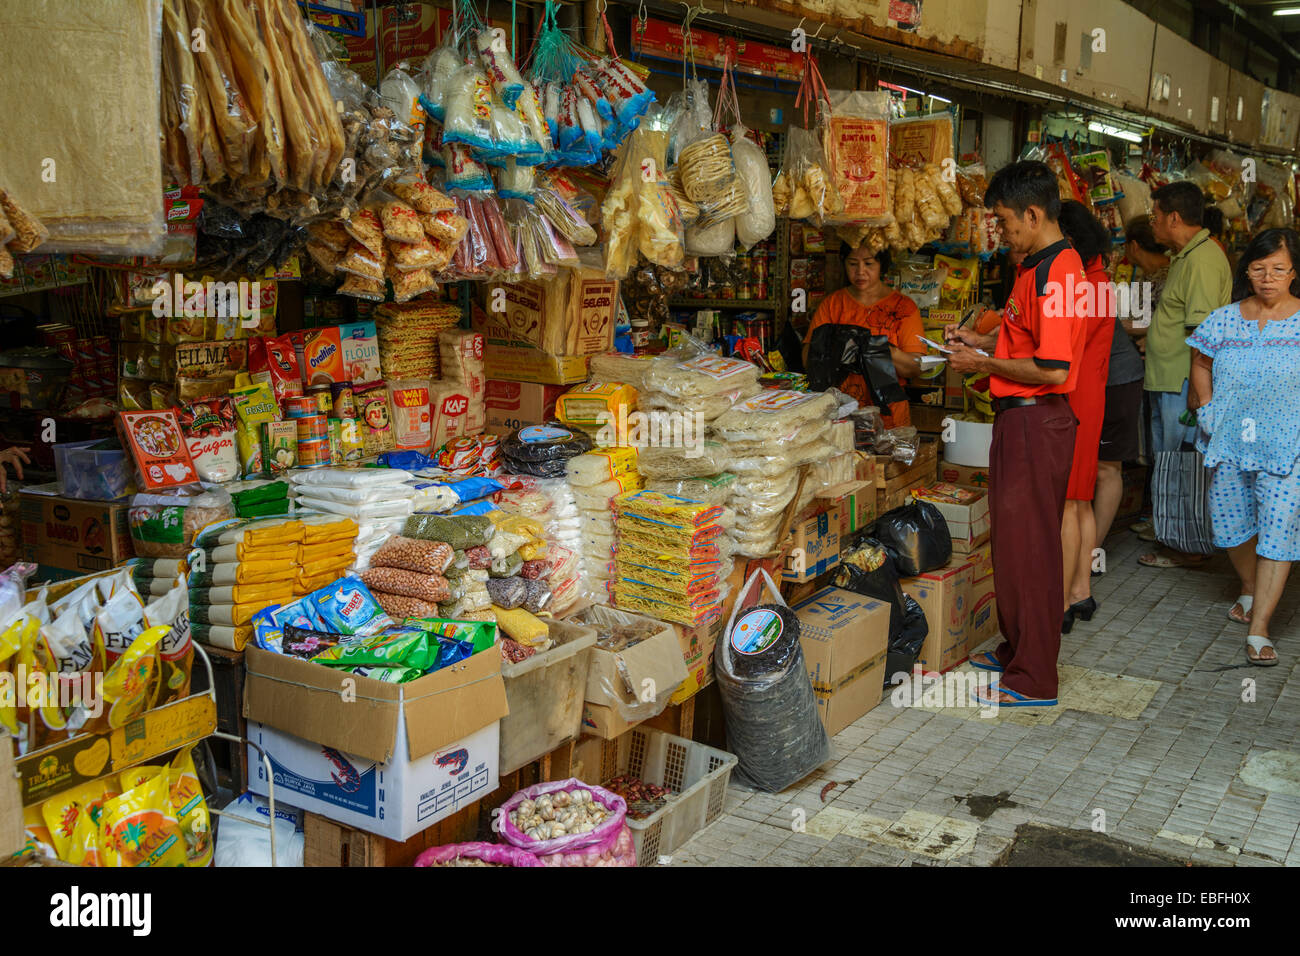 Personas y puestos a Pasar Khusus (mercado) especial Mandiri BLOK M Kelapa Gading Yakarta Foto de stock